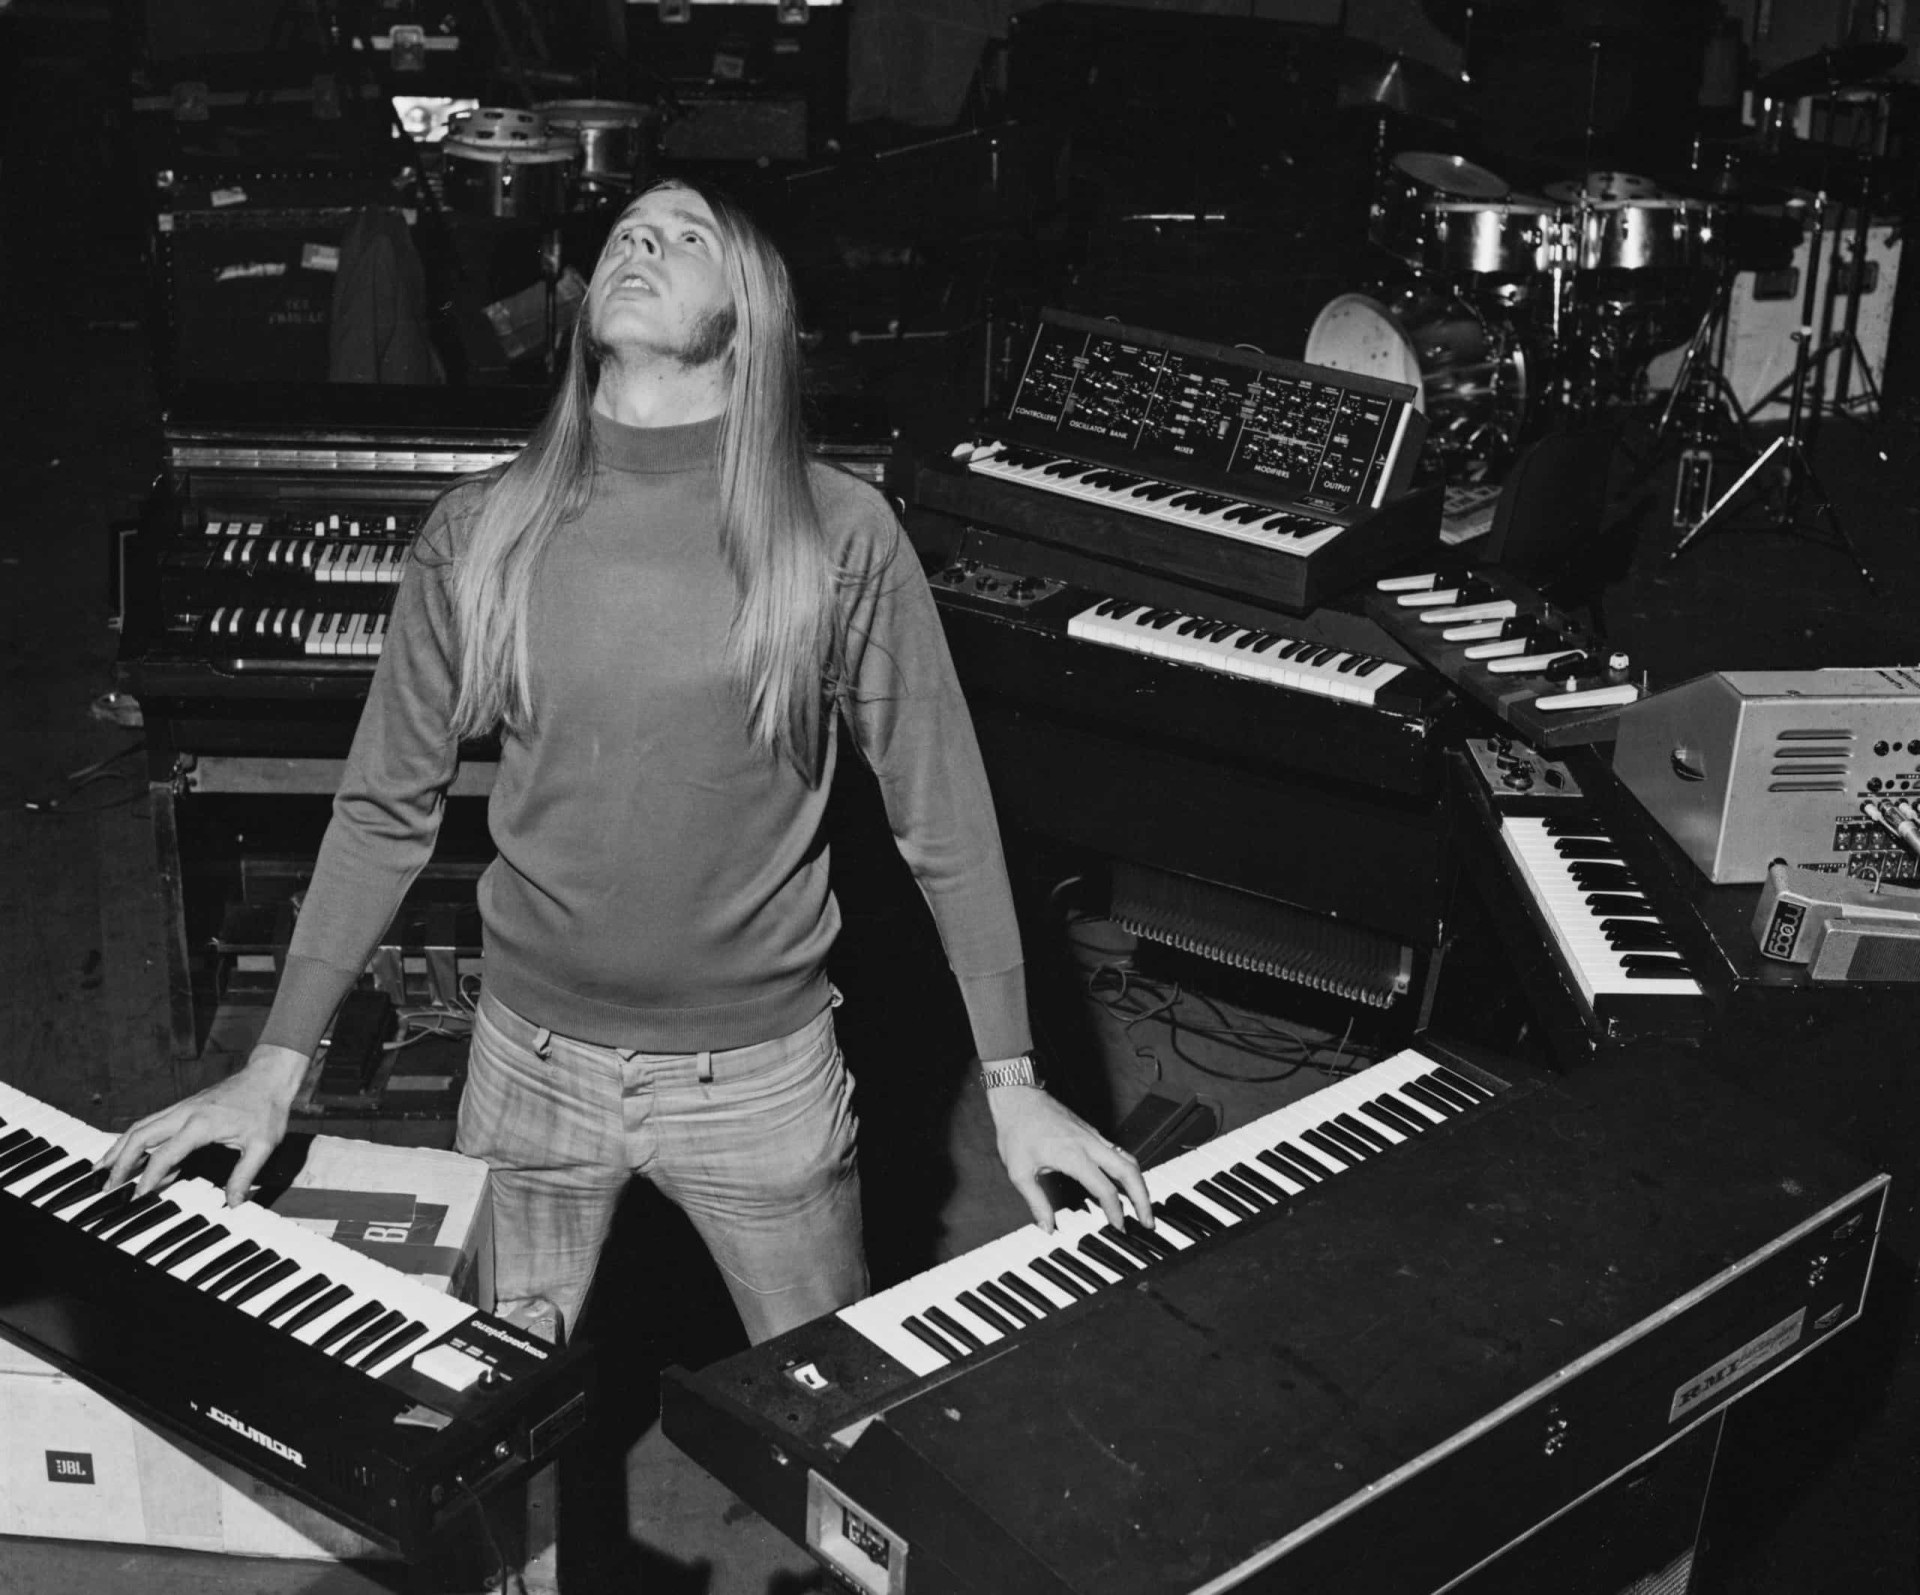 <p>Tatsächlich konnten virtuose Keyboarder wie Rick Wakeman, ein späteres Mitglied der Progrock-Band Yes, durch die Kombination von Synthesizern und Klavier erfolgreiche Solokarrieren aufbauen.</p>